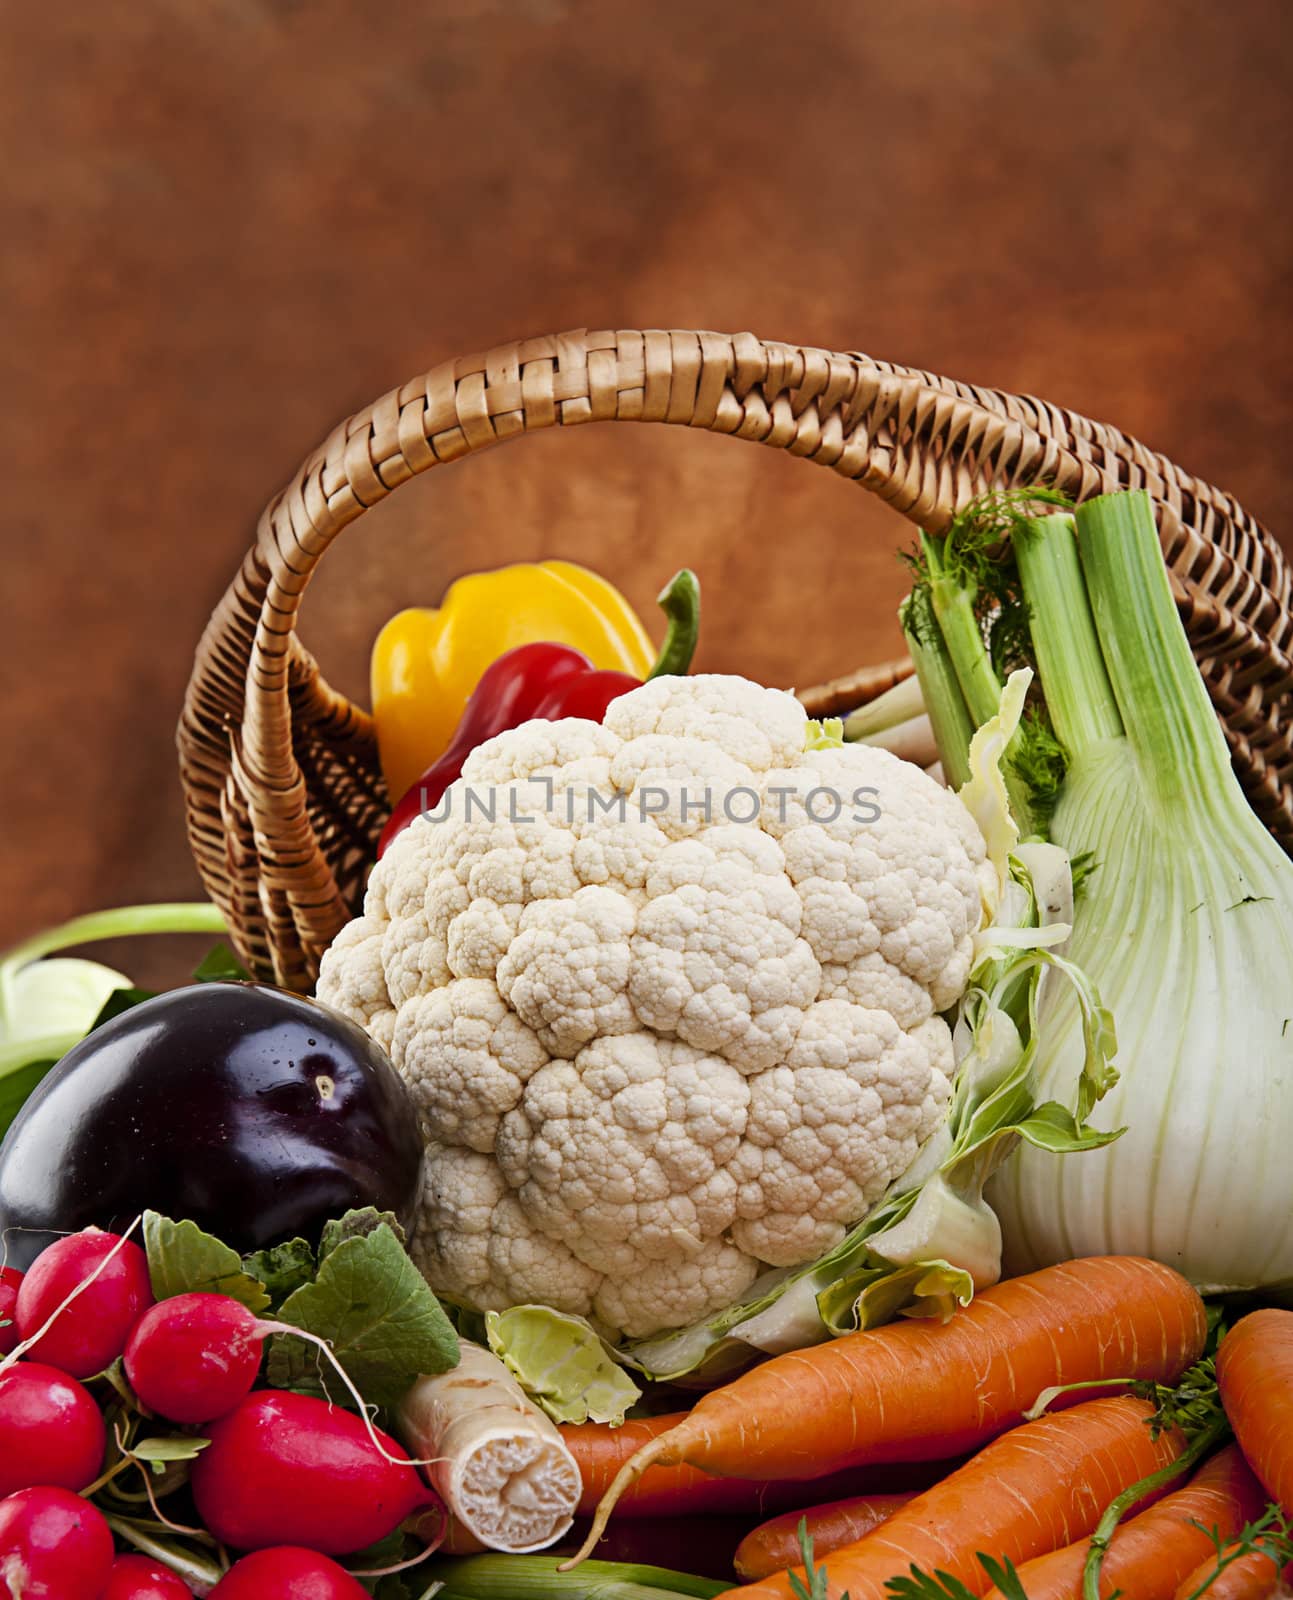 Basket full of various fresh organic vegetables from the garden